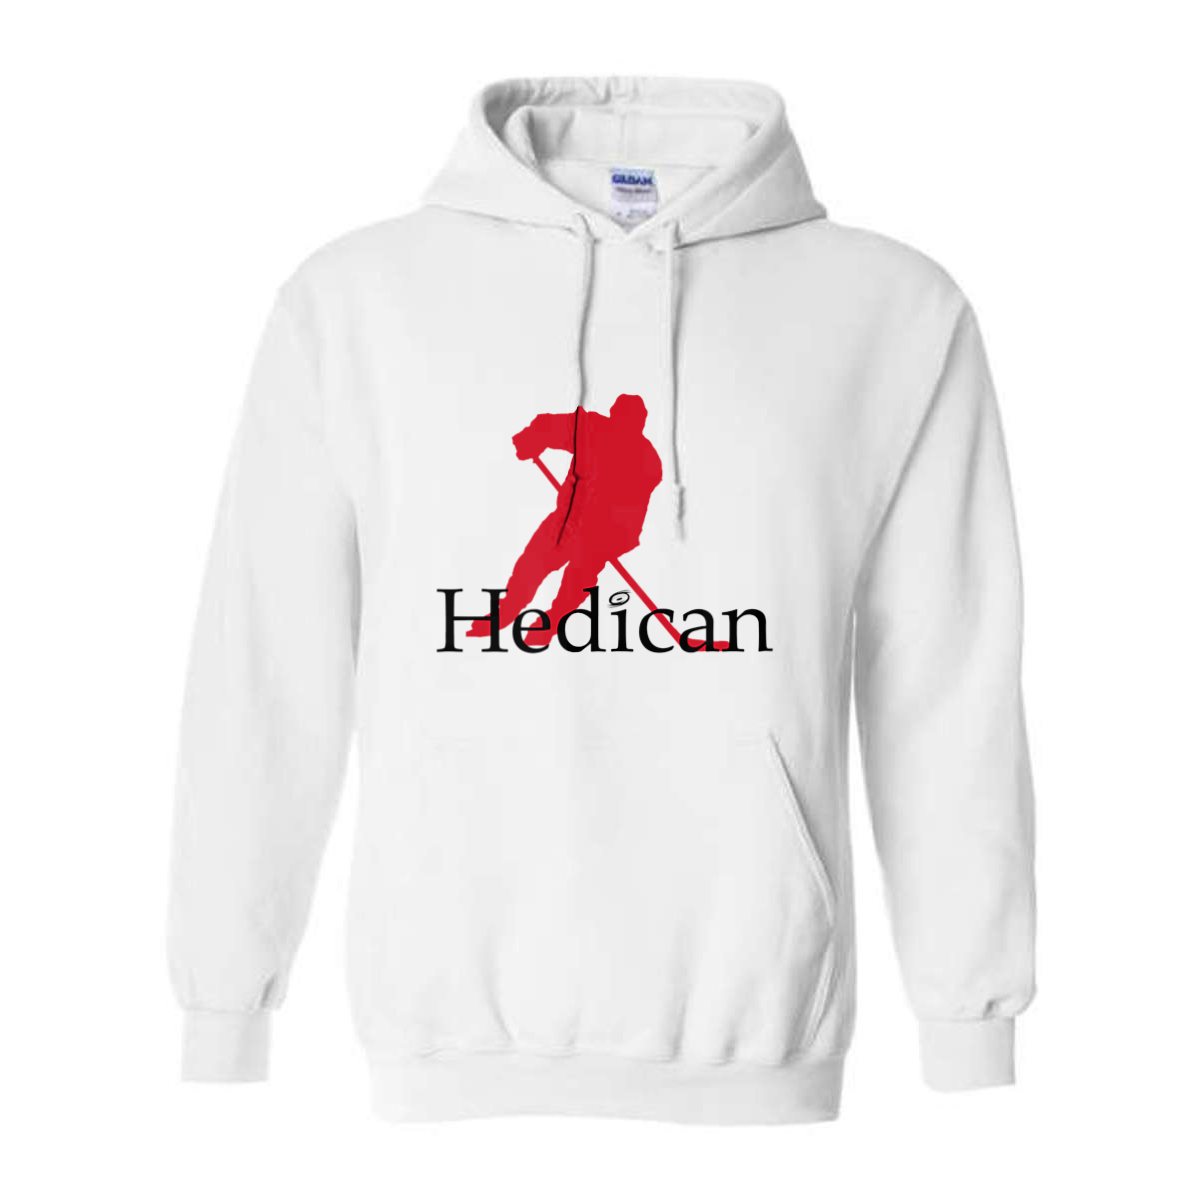 GT Hedican Logo Hoodie